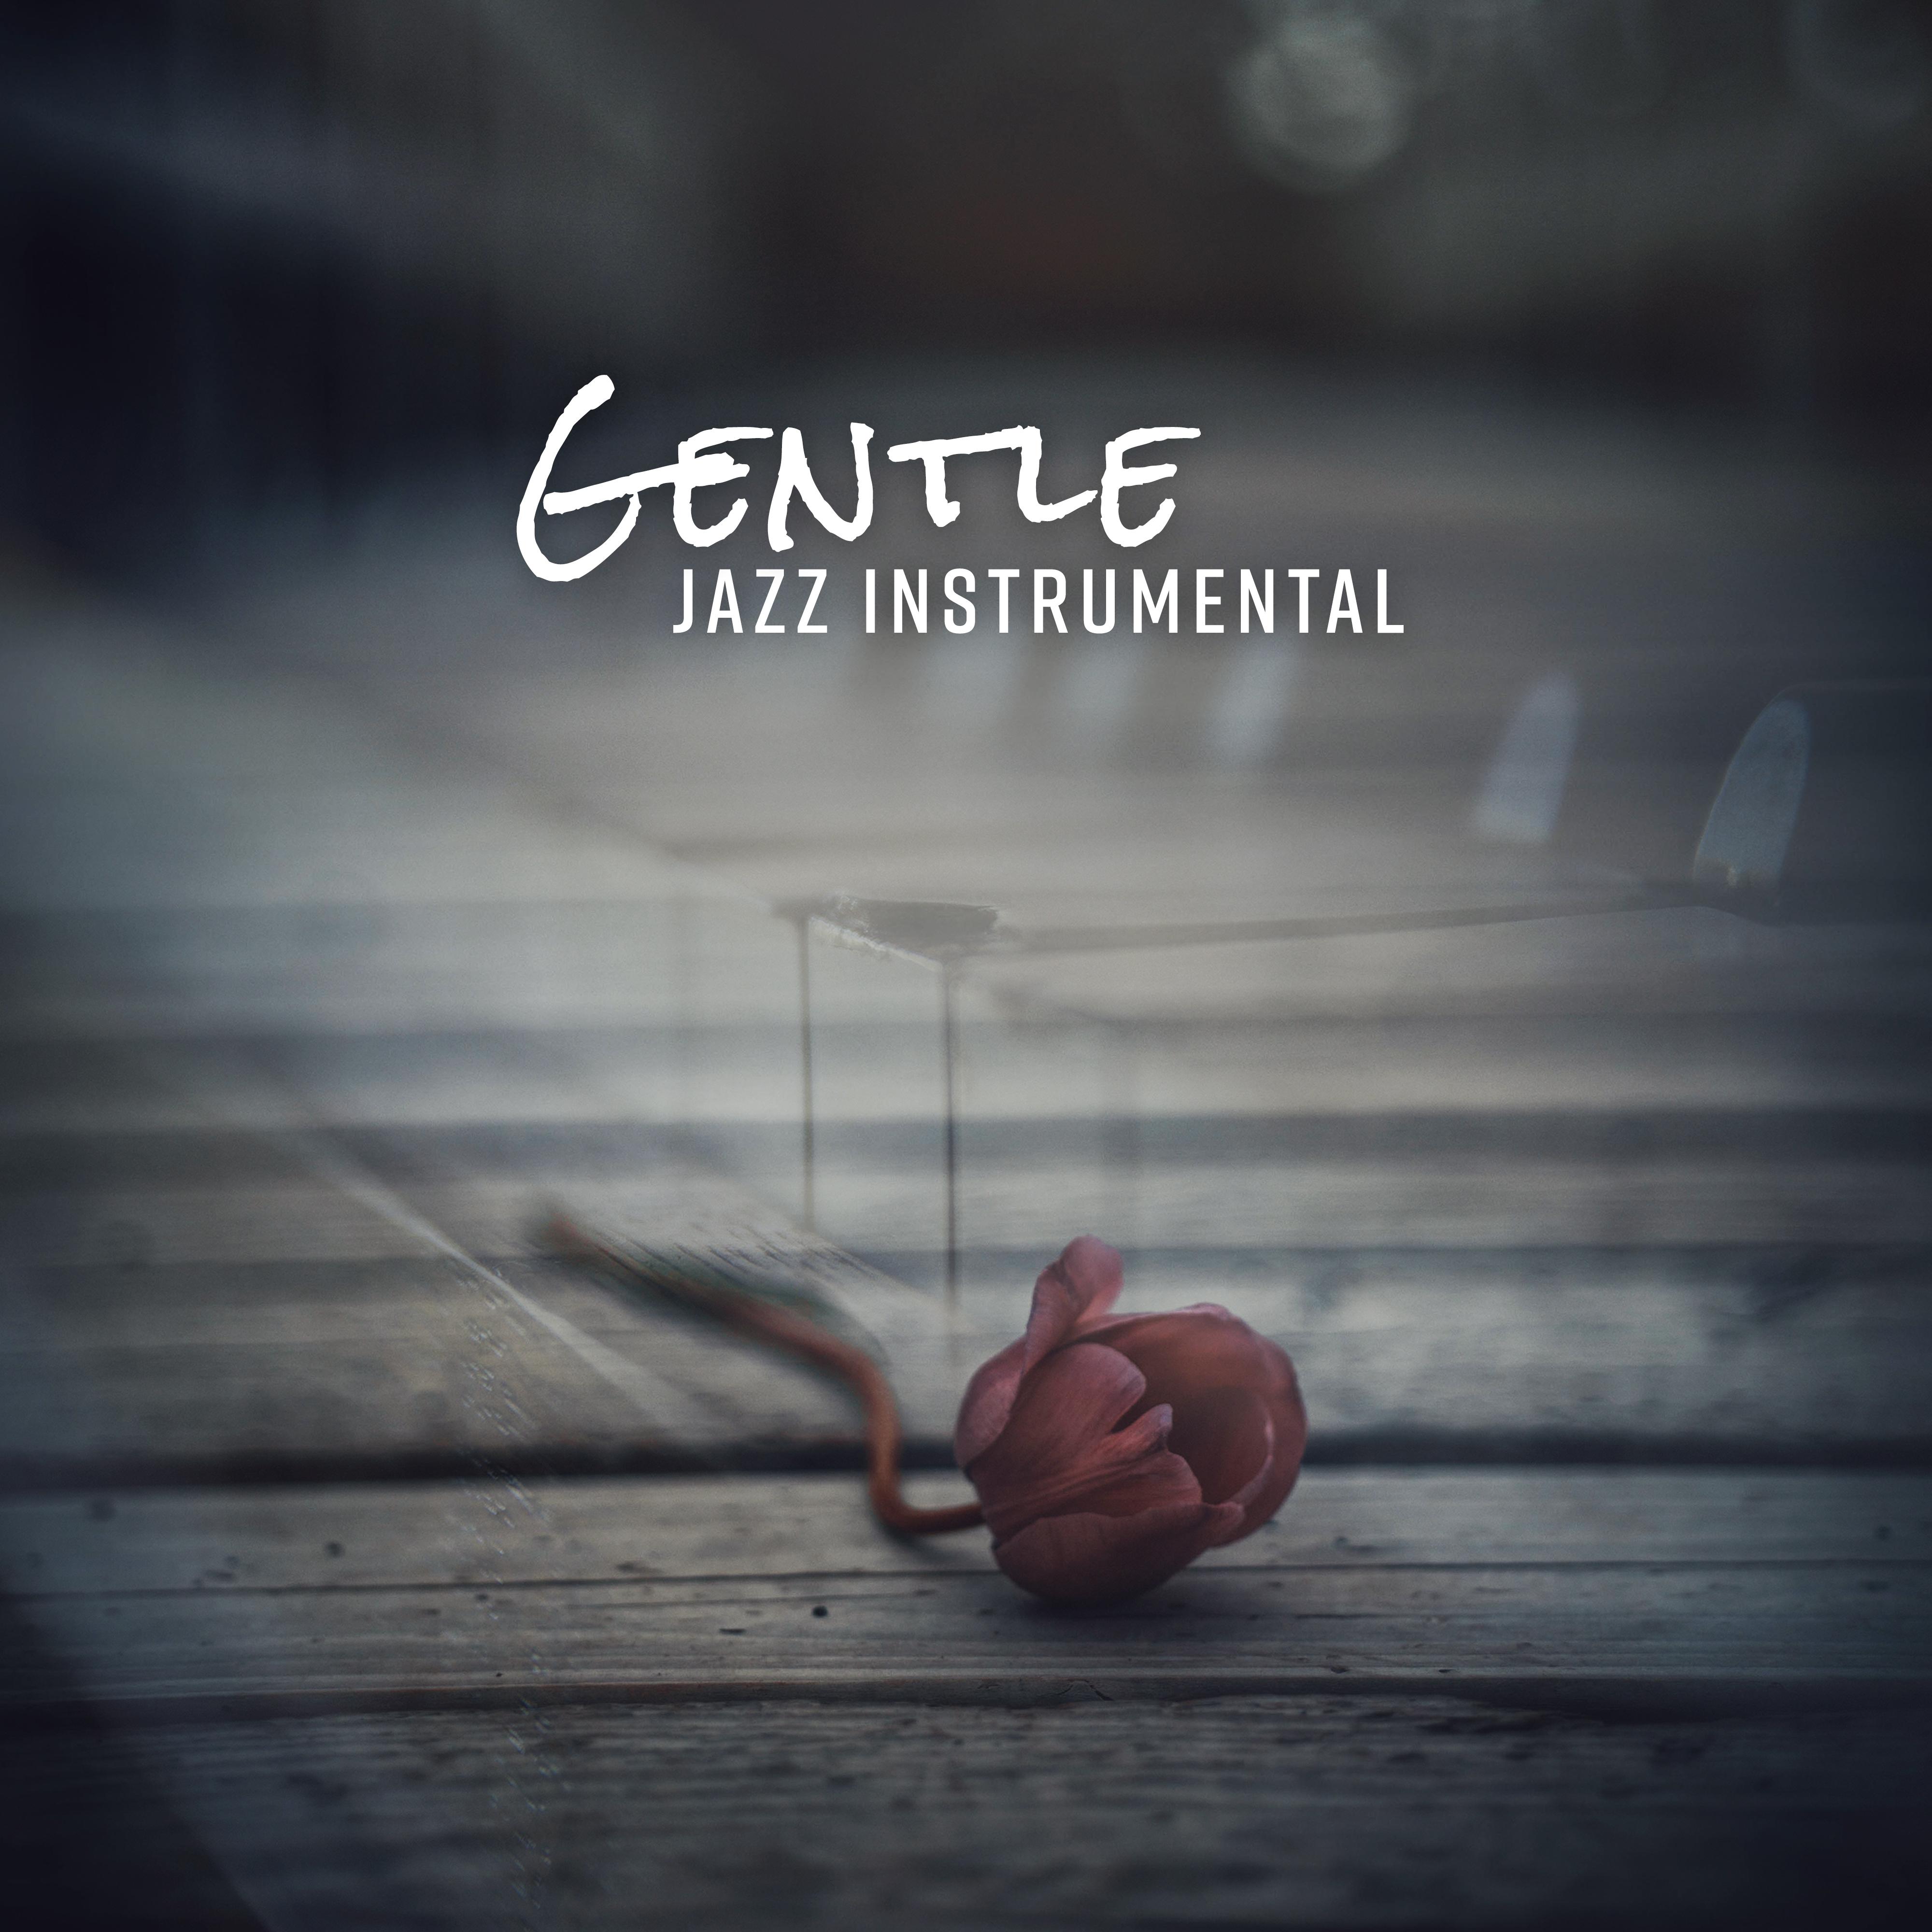 Gentle Jazz Instrumental